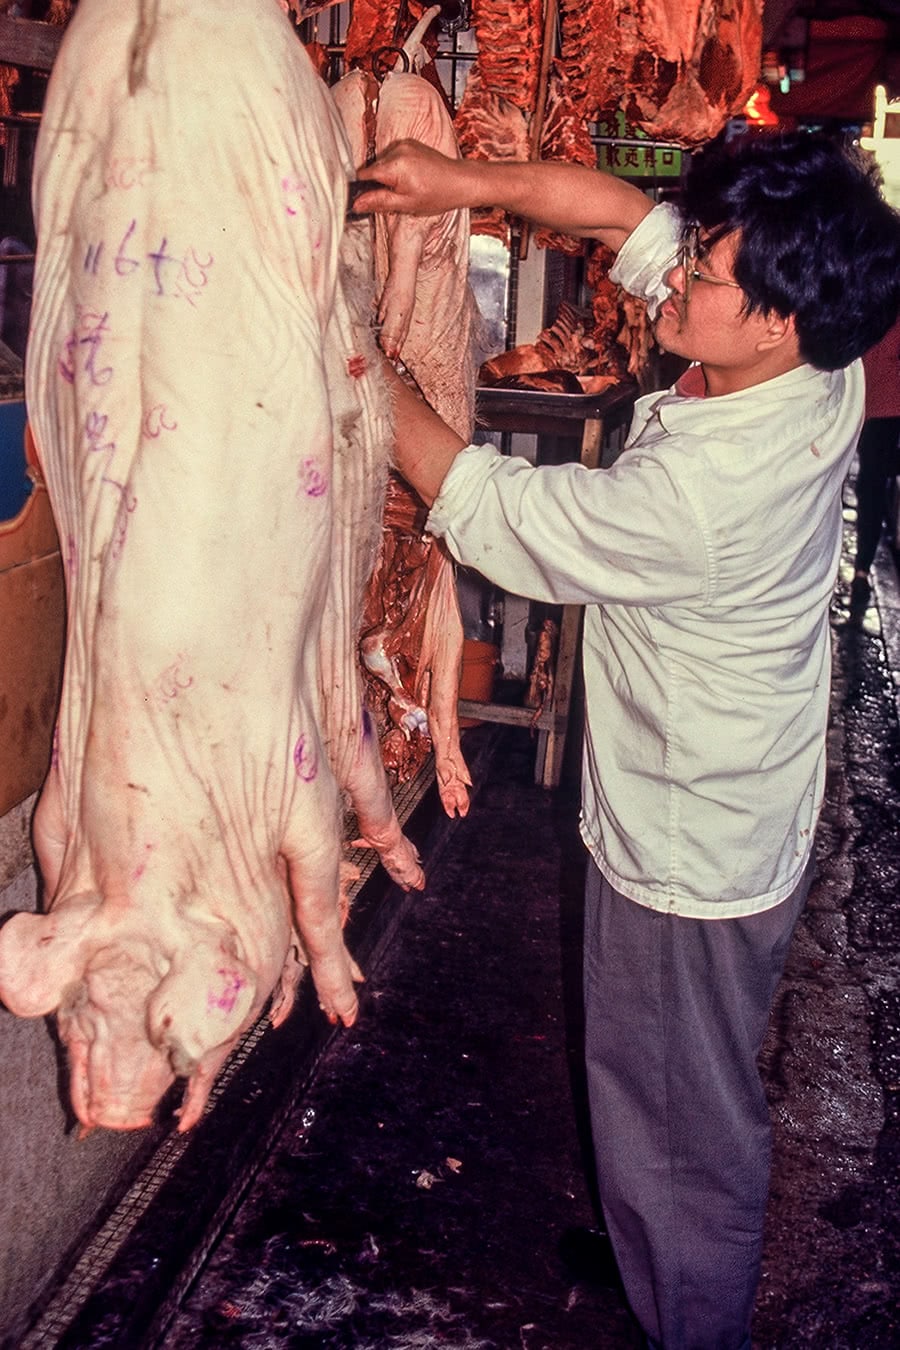 A butcher cuts meat in Mongkok, Hong Kong.